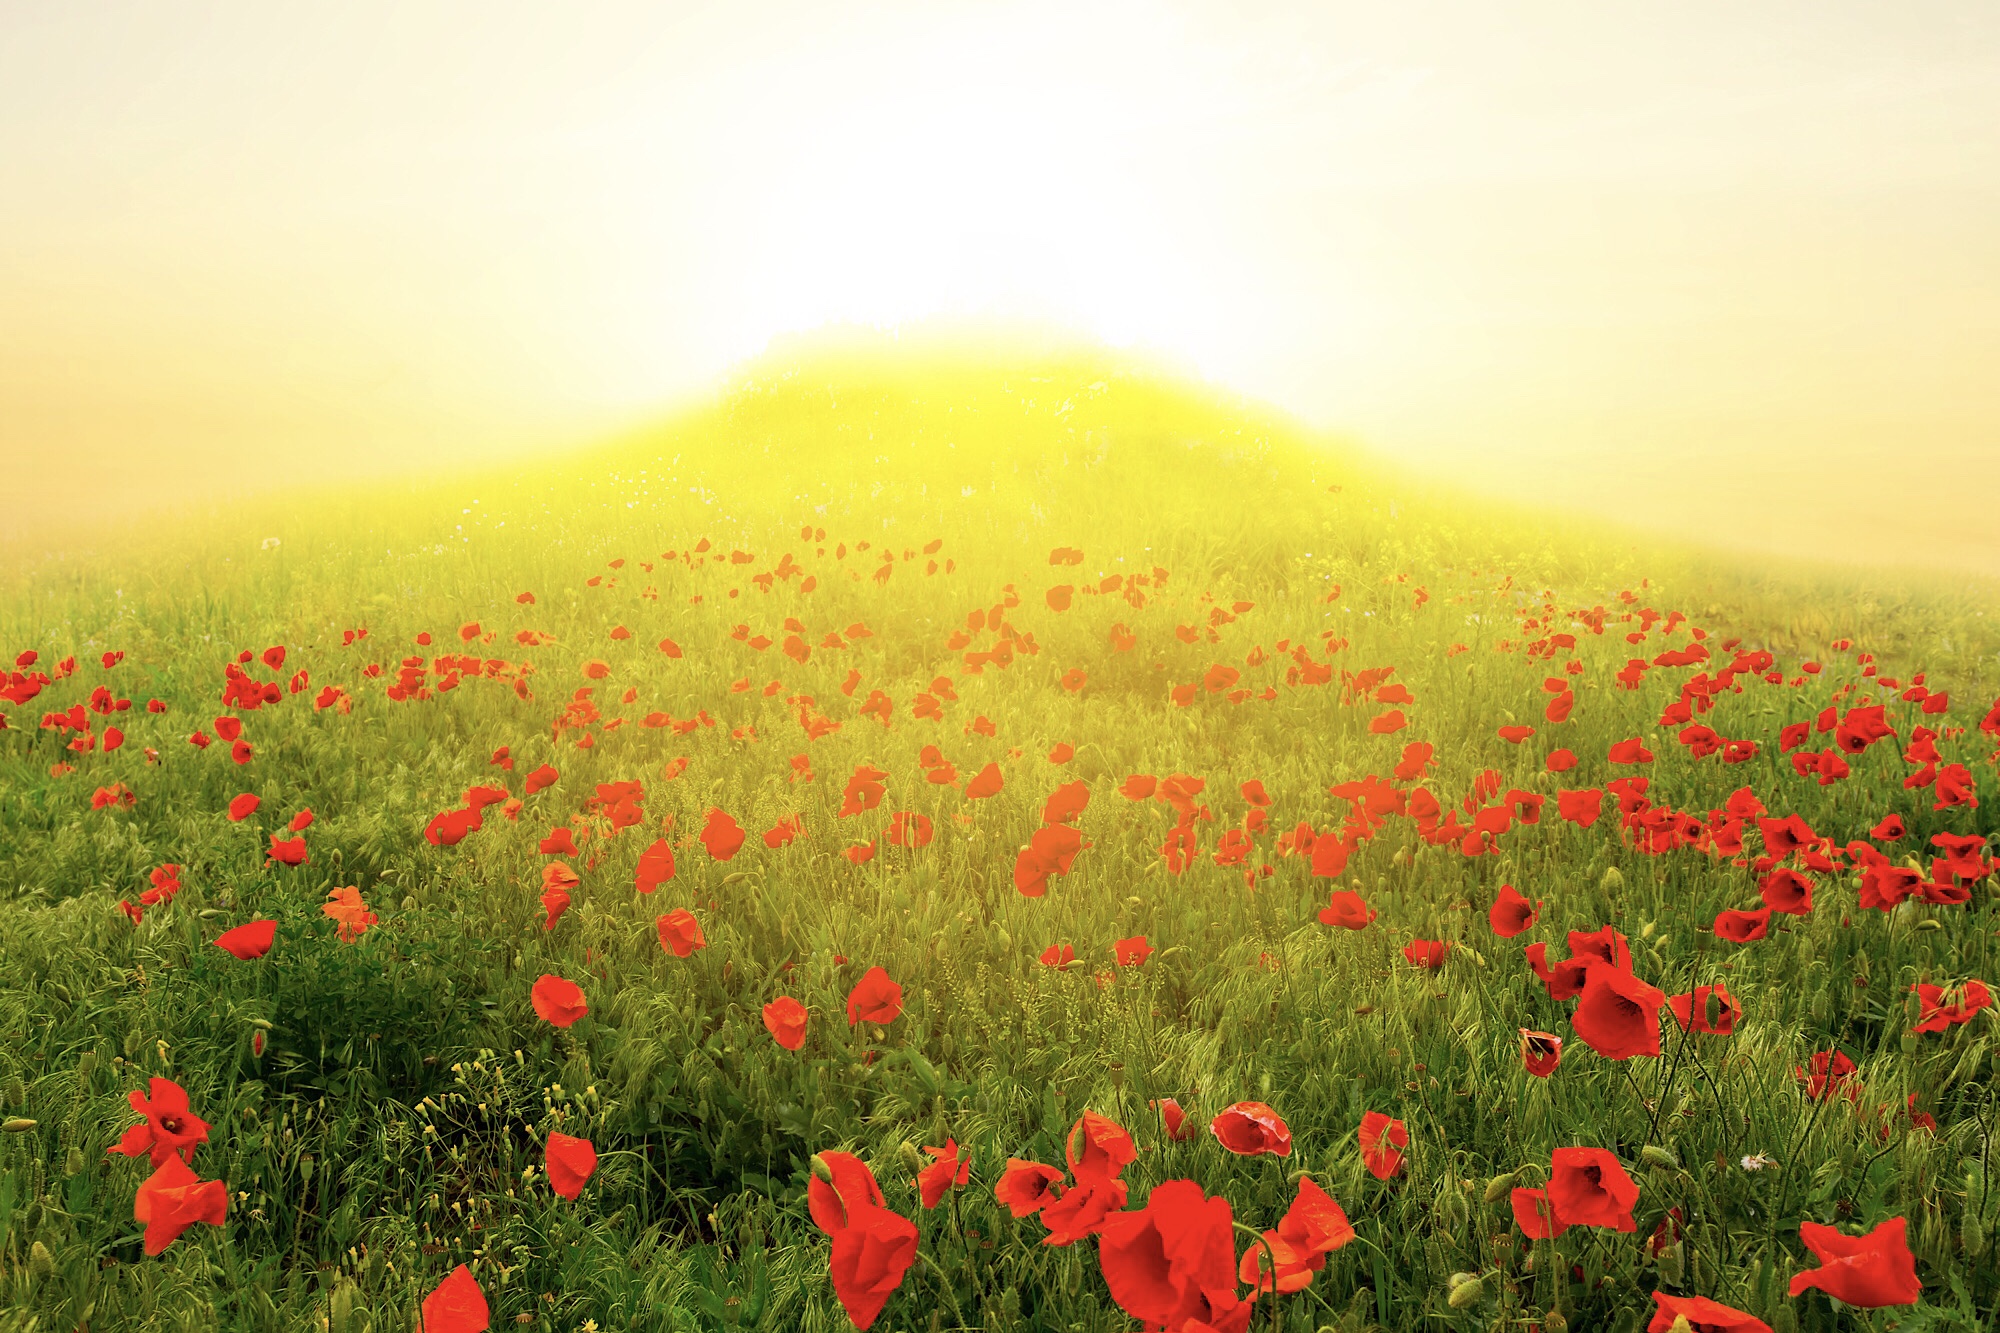 小高い丘の後ろから降り注ぐ太陽の光で辺りが黄色く染まる野原。野原一面を飾る真っ赤なポピーの花。